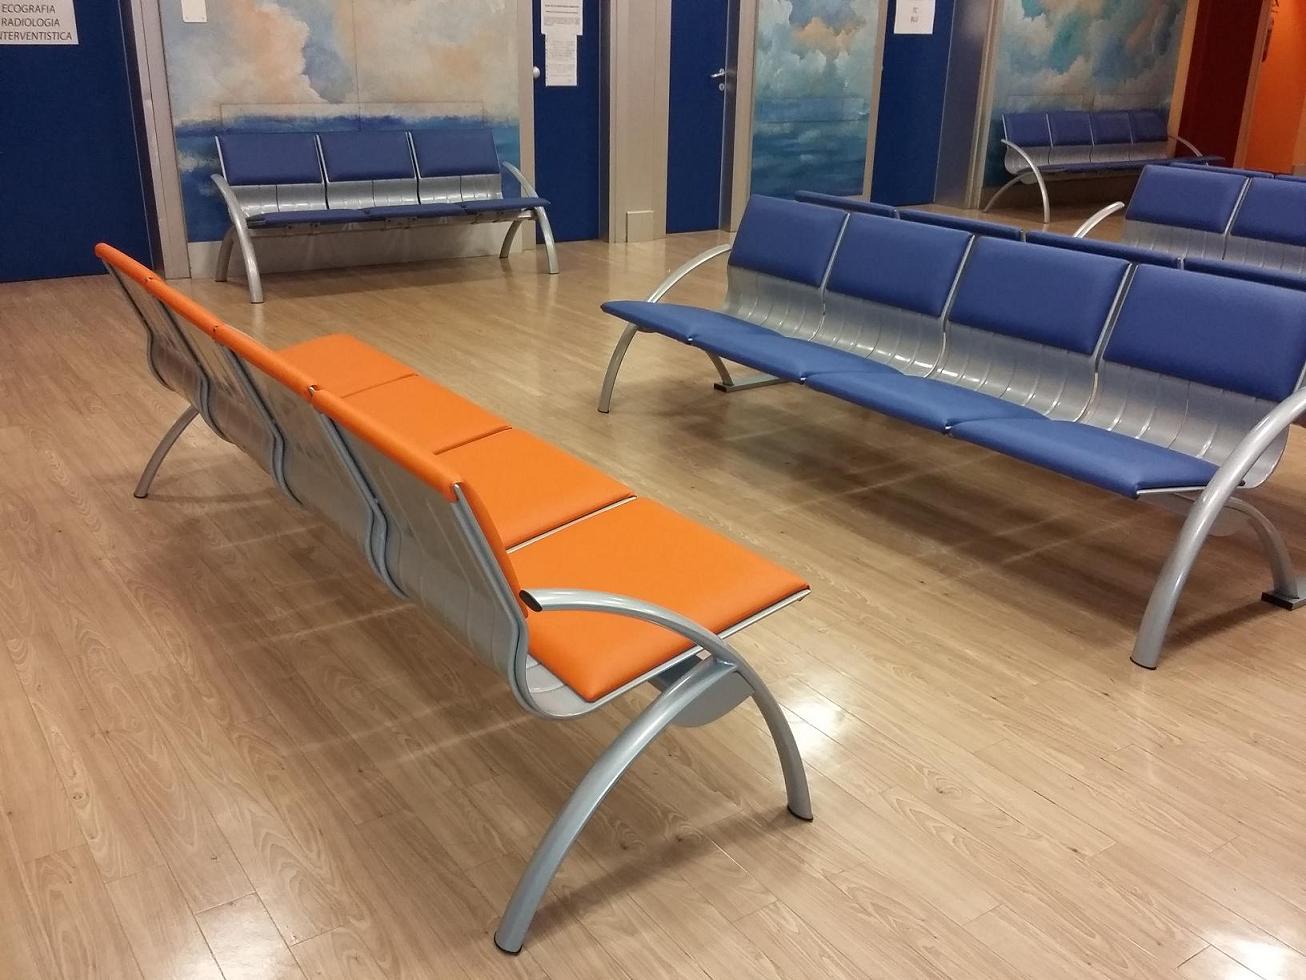 Sala de espera en el Hospital IOV - Padua